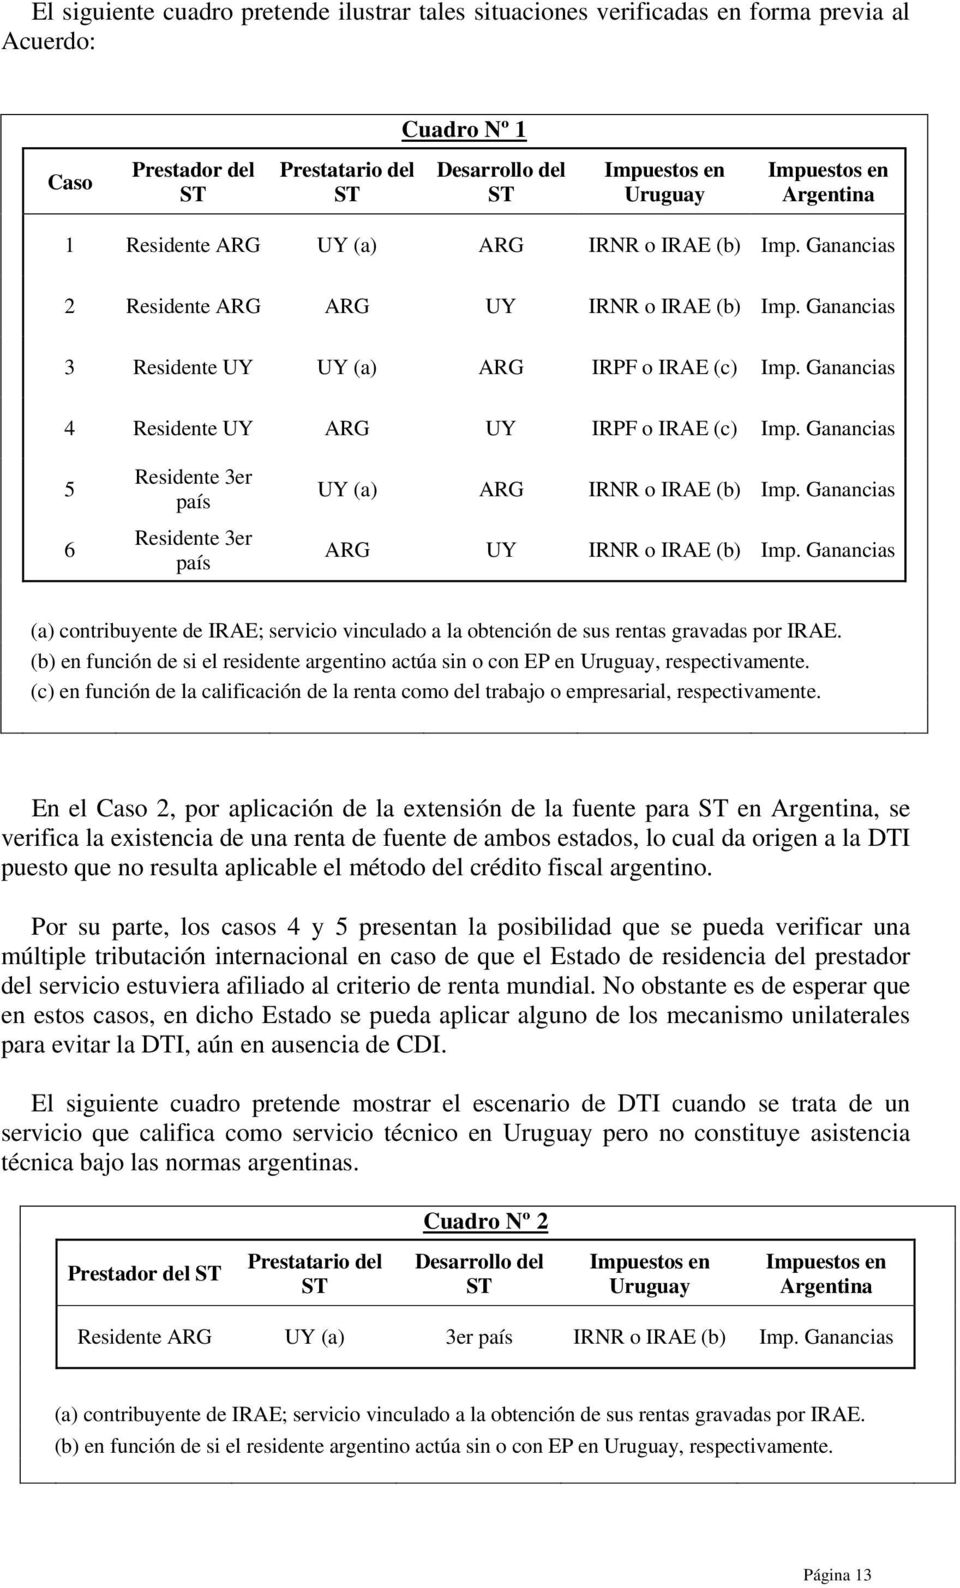 IRAE (b) (a) contribuyente de IRAE; servicio vinculado a la obtención de sus rentas gravadas por IRAE. (b) en función de si el residente argentino actúa sin o con EP en Uruguay, respectivamente.